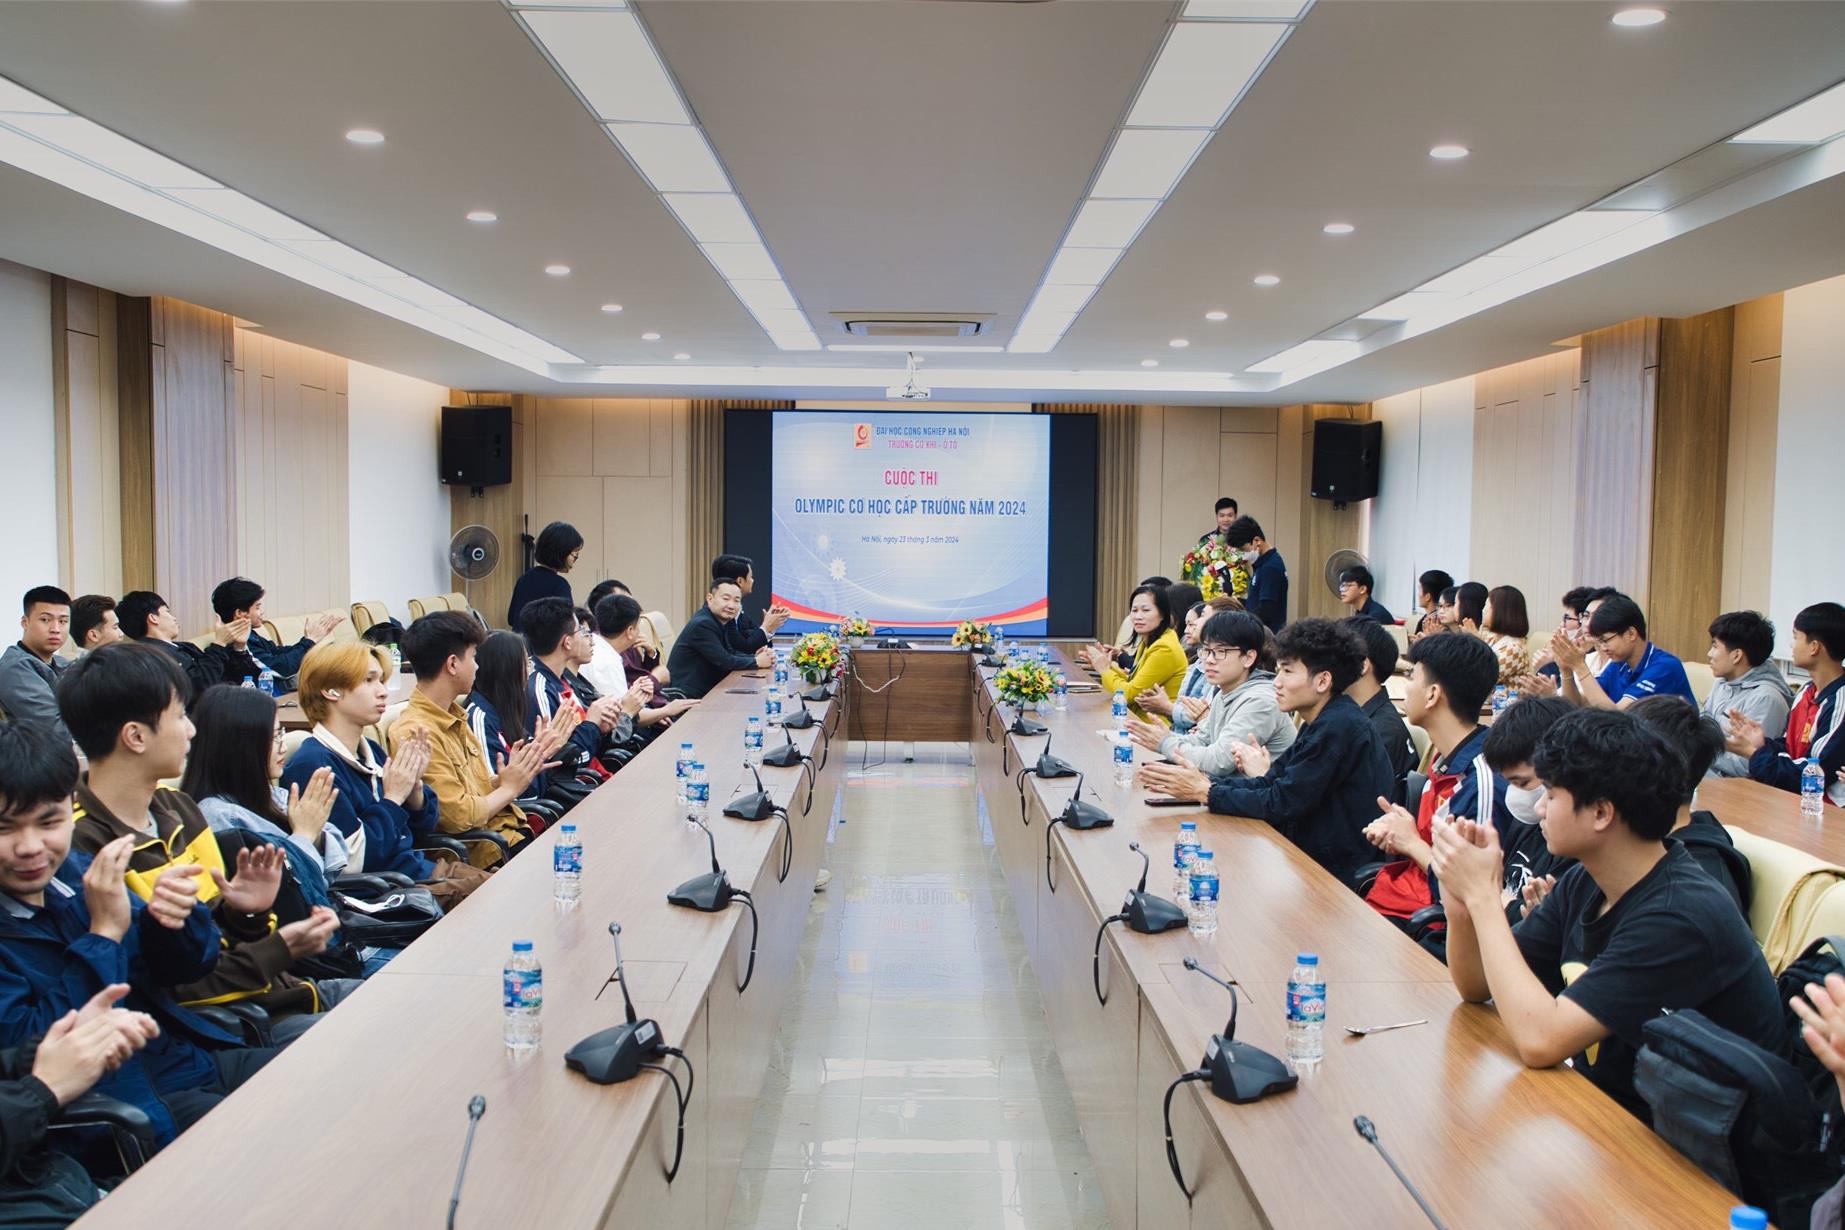 [tapchicongthuong] Trường Đại học Công nghiệp Hà Nội: Tìm kiếm tài năng qua Cuộc thi Olympic Cơ học cấp trường